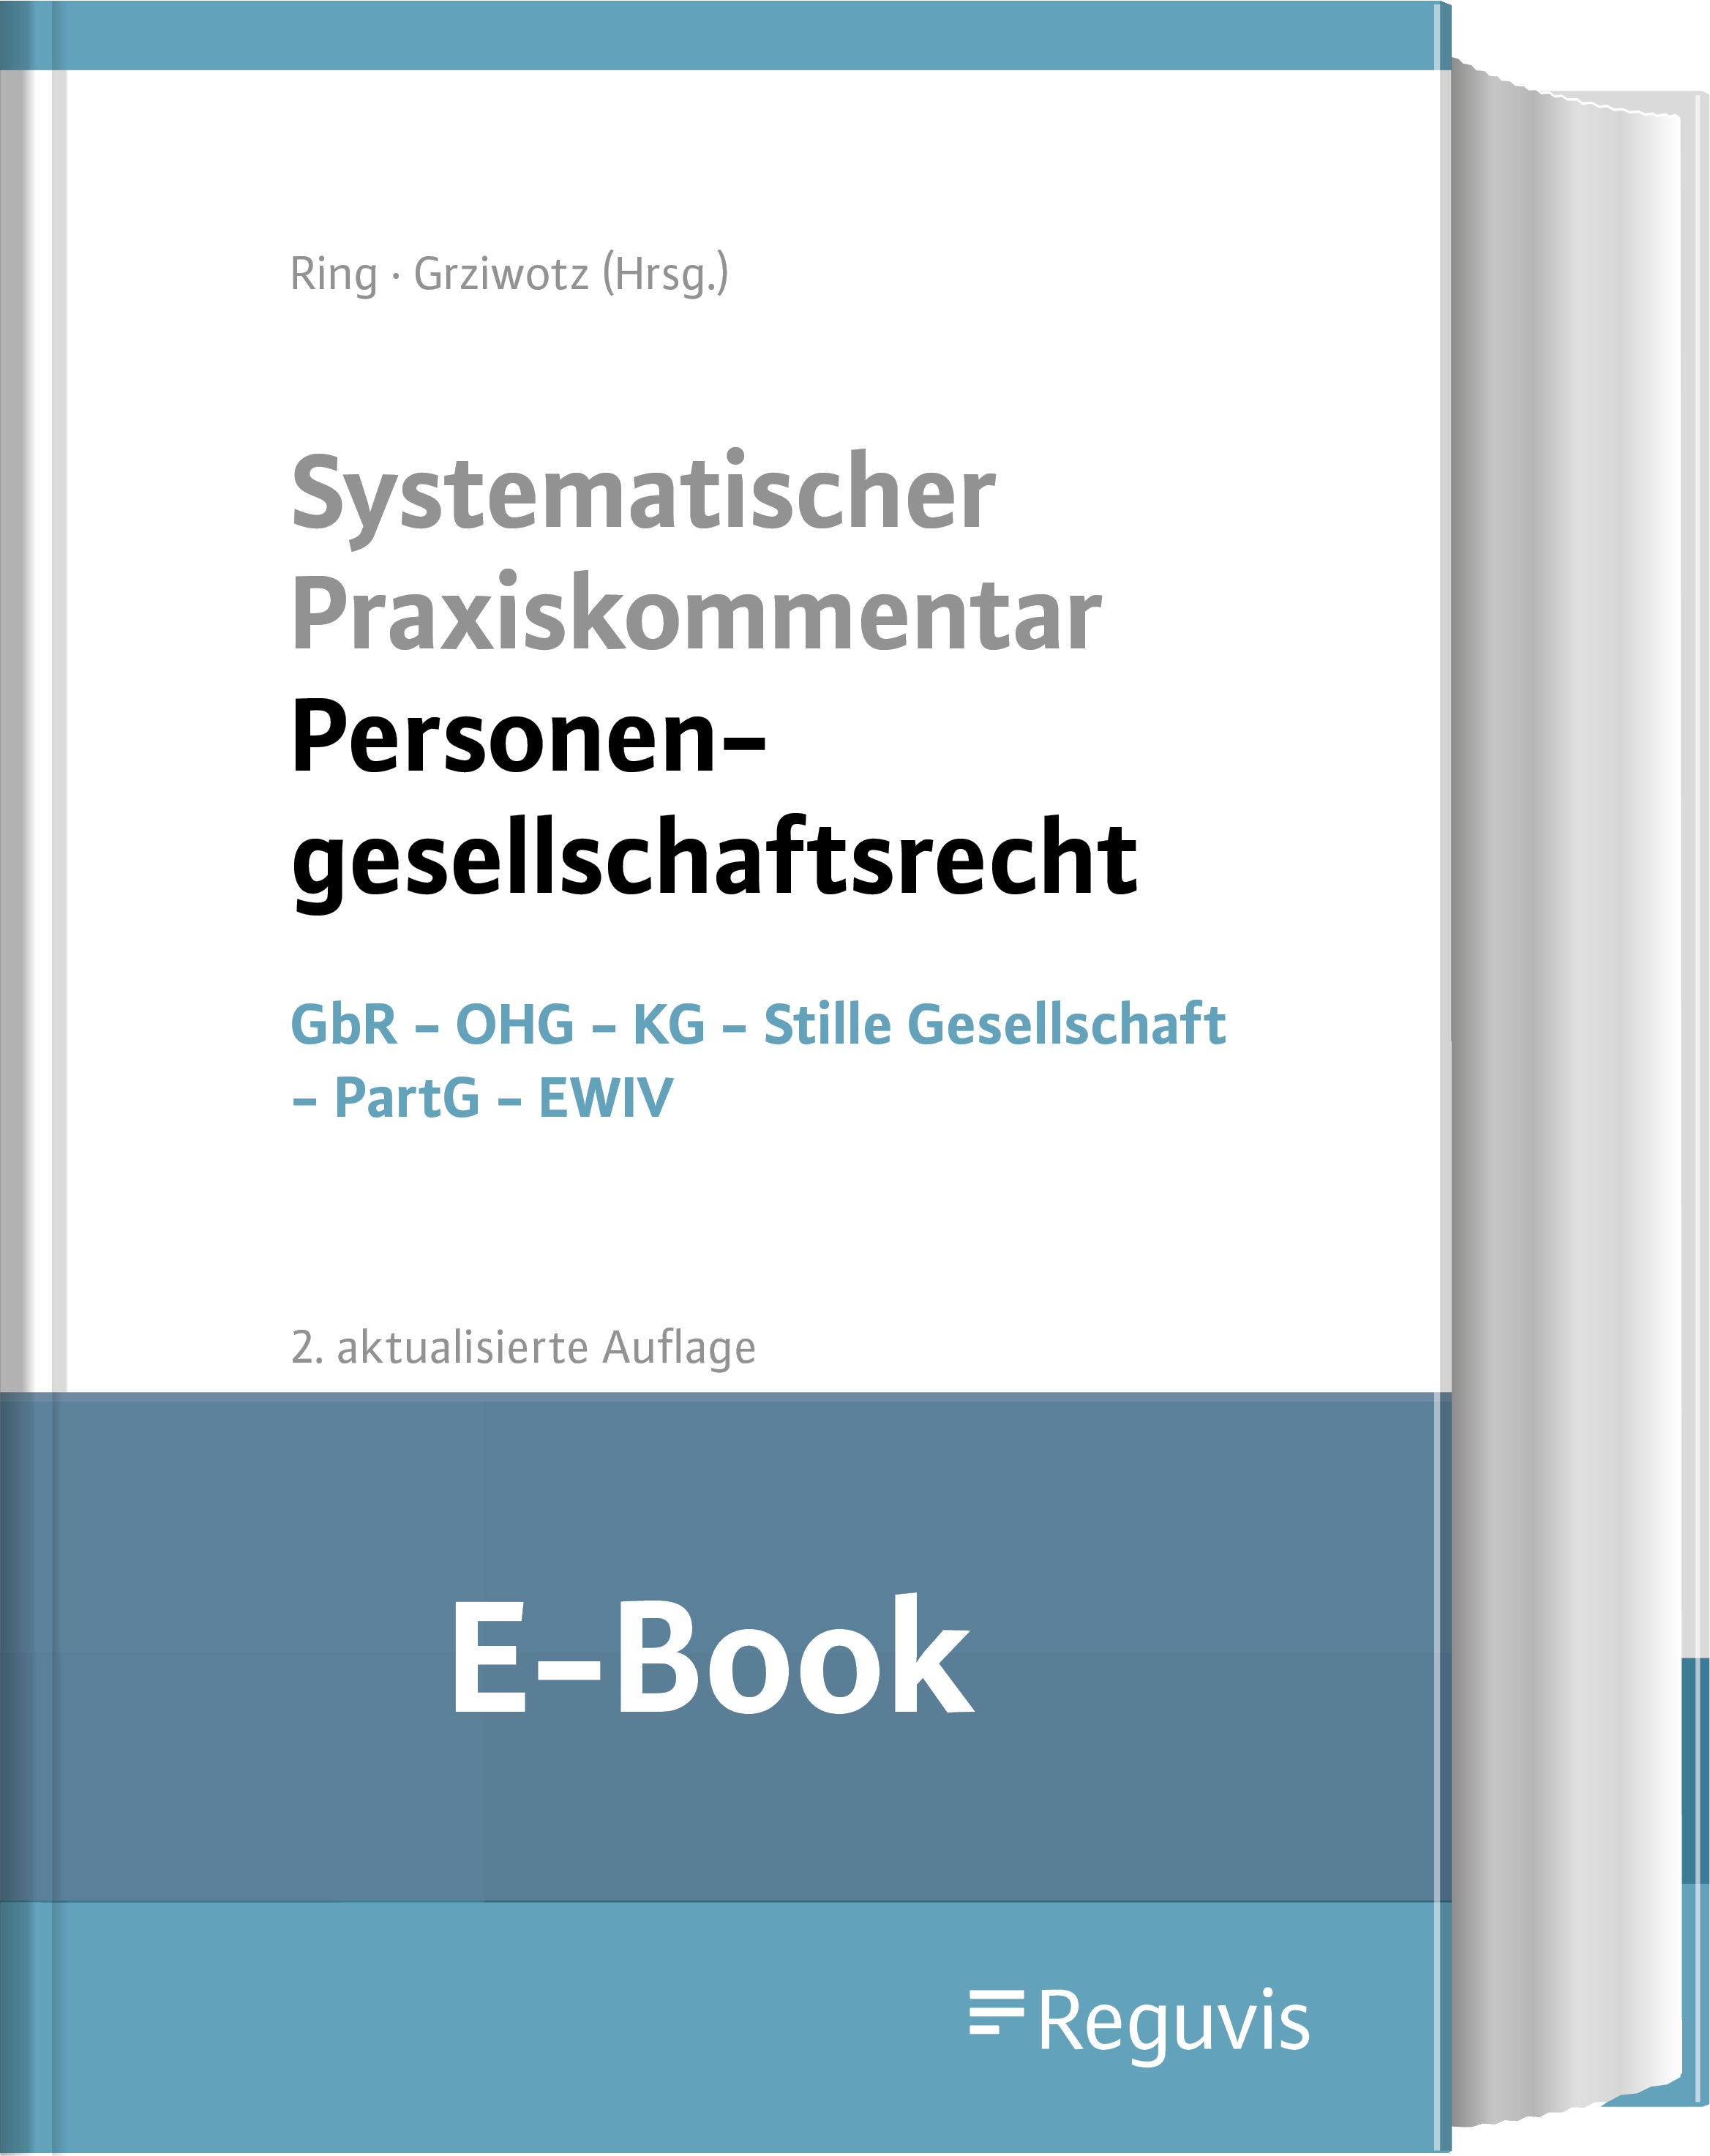 Ring/Grziwotz; Praxiskom.Personengesellschaftsrecht E-Book